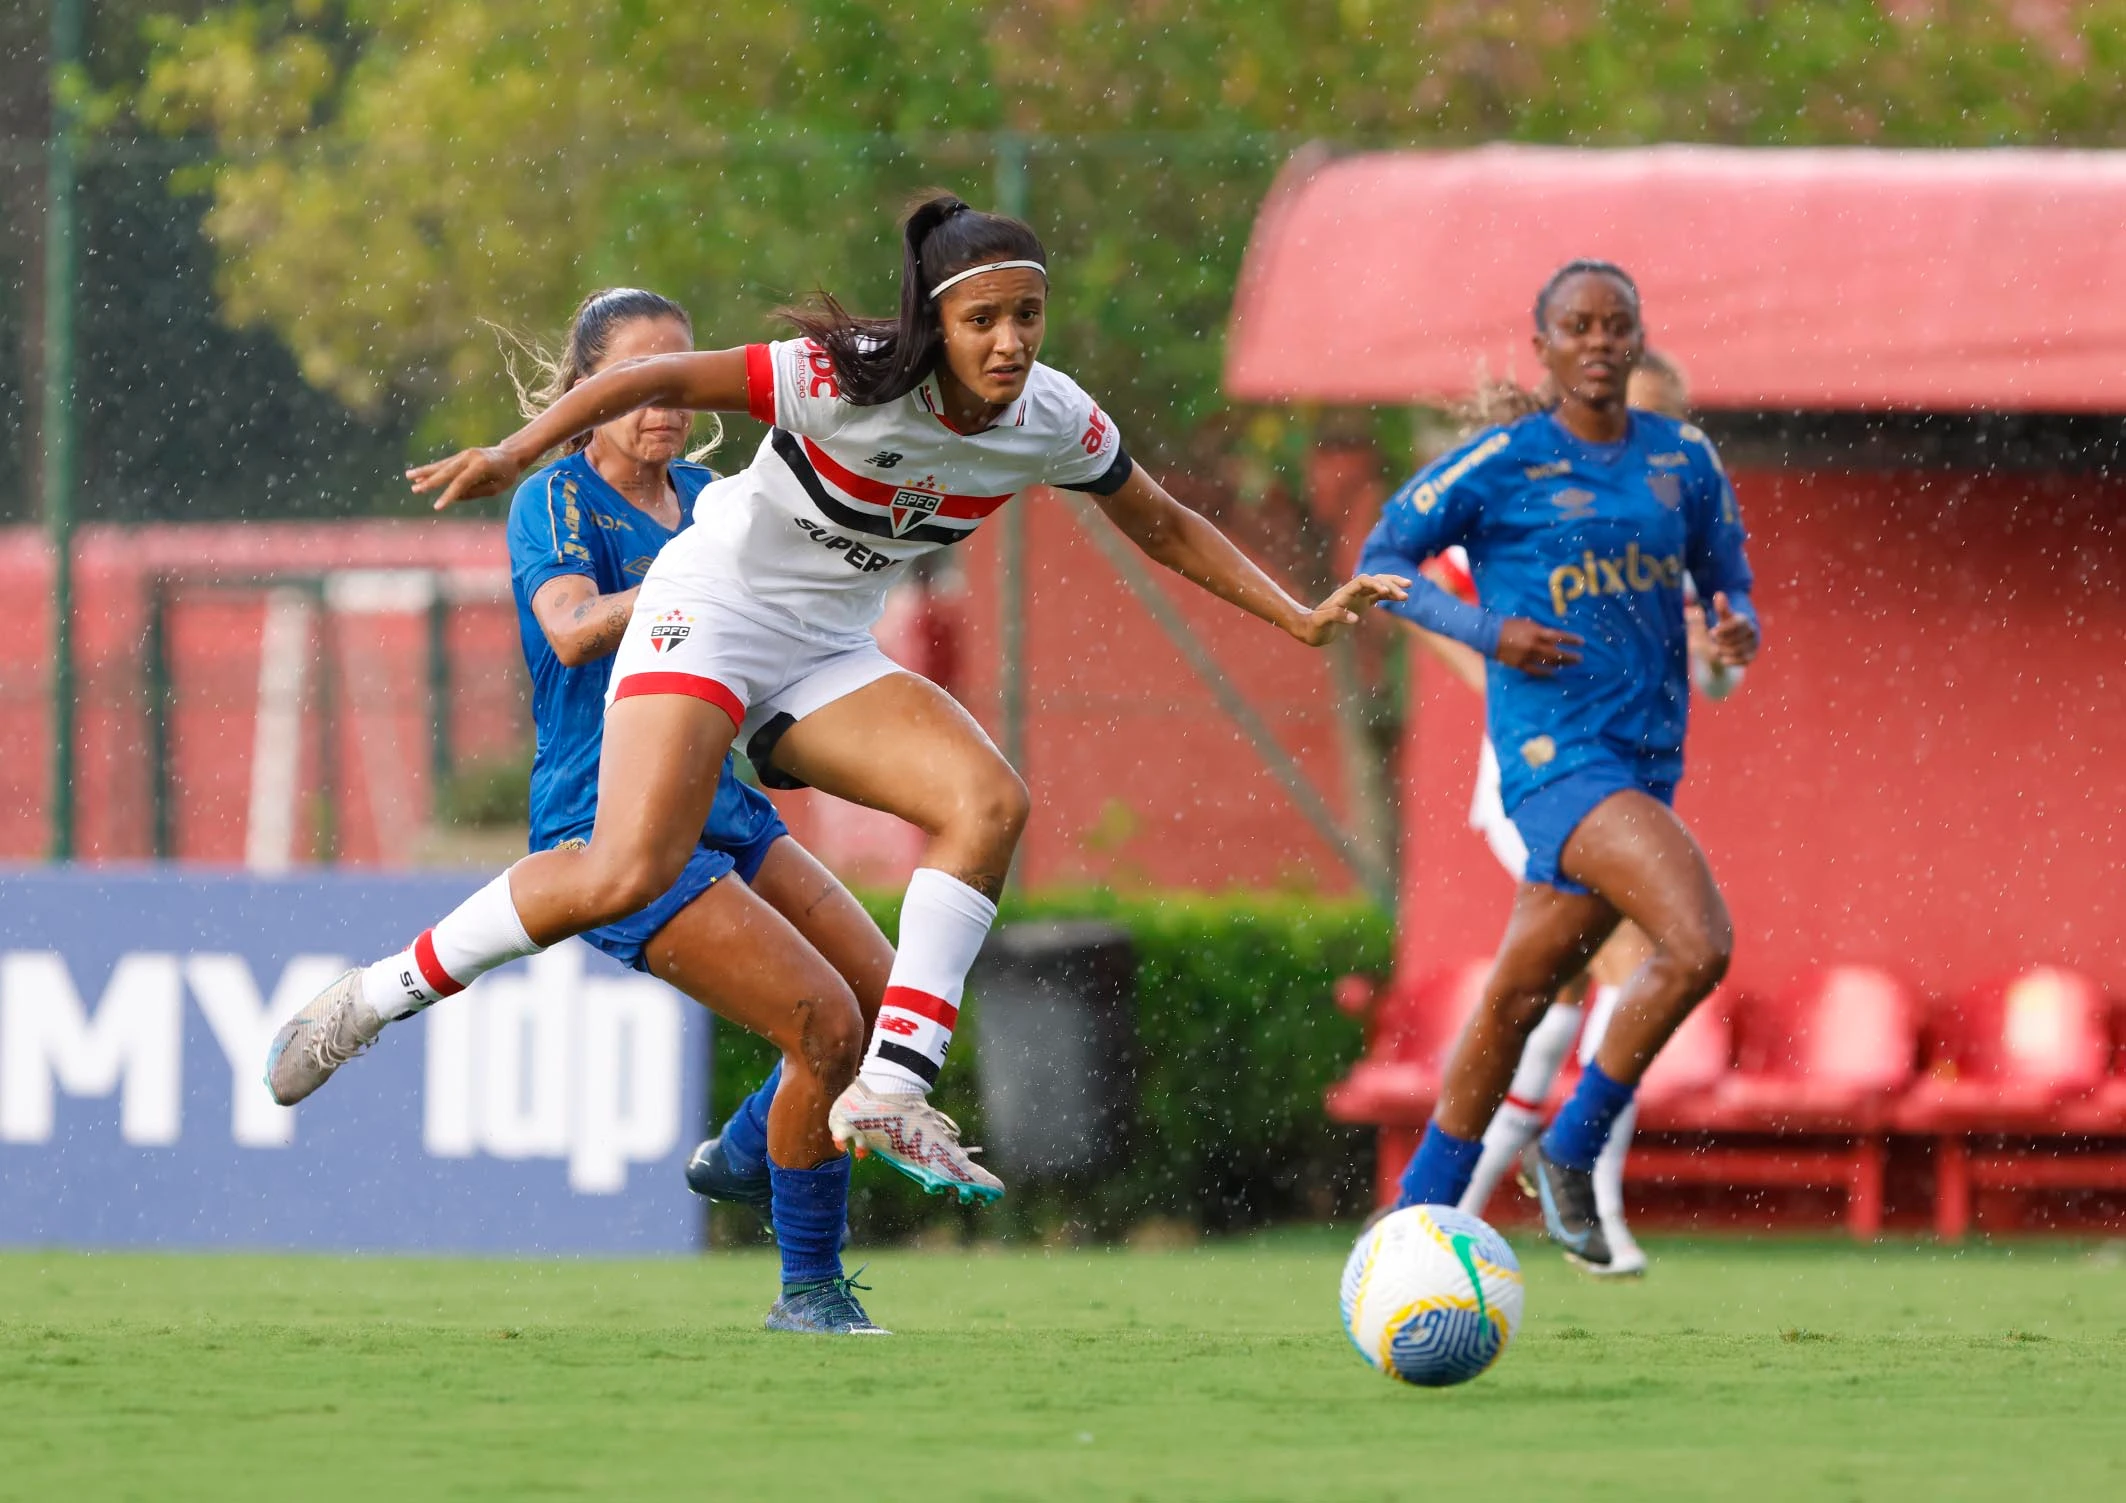 Jogadora do São Paulo expressa sentimento em disputar pela primeira vez o Brasileirão Feminino